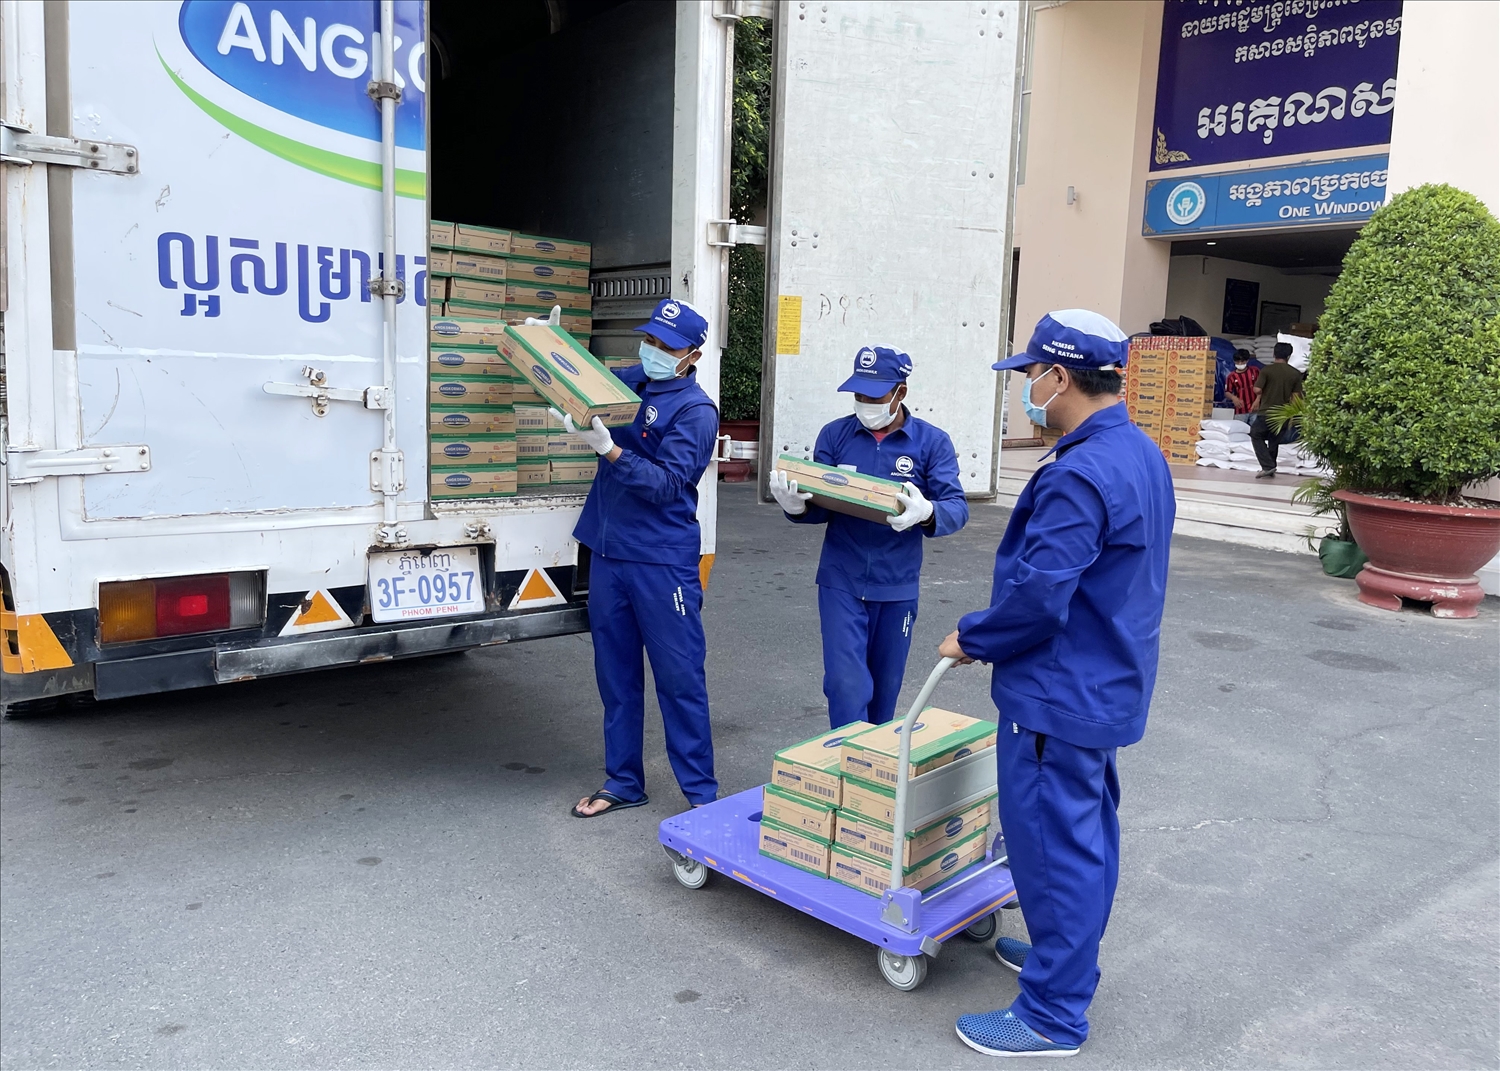 Công tác giao nhận sữa cho chính quyền Phnom Penh được nhà máy Angkormilk thực hiện cẩn trọng tuyệt đối theo qui định phòng dịch Covid-19